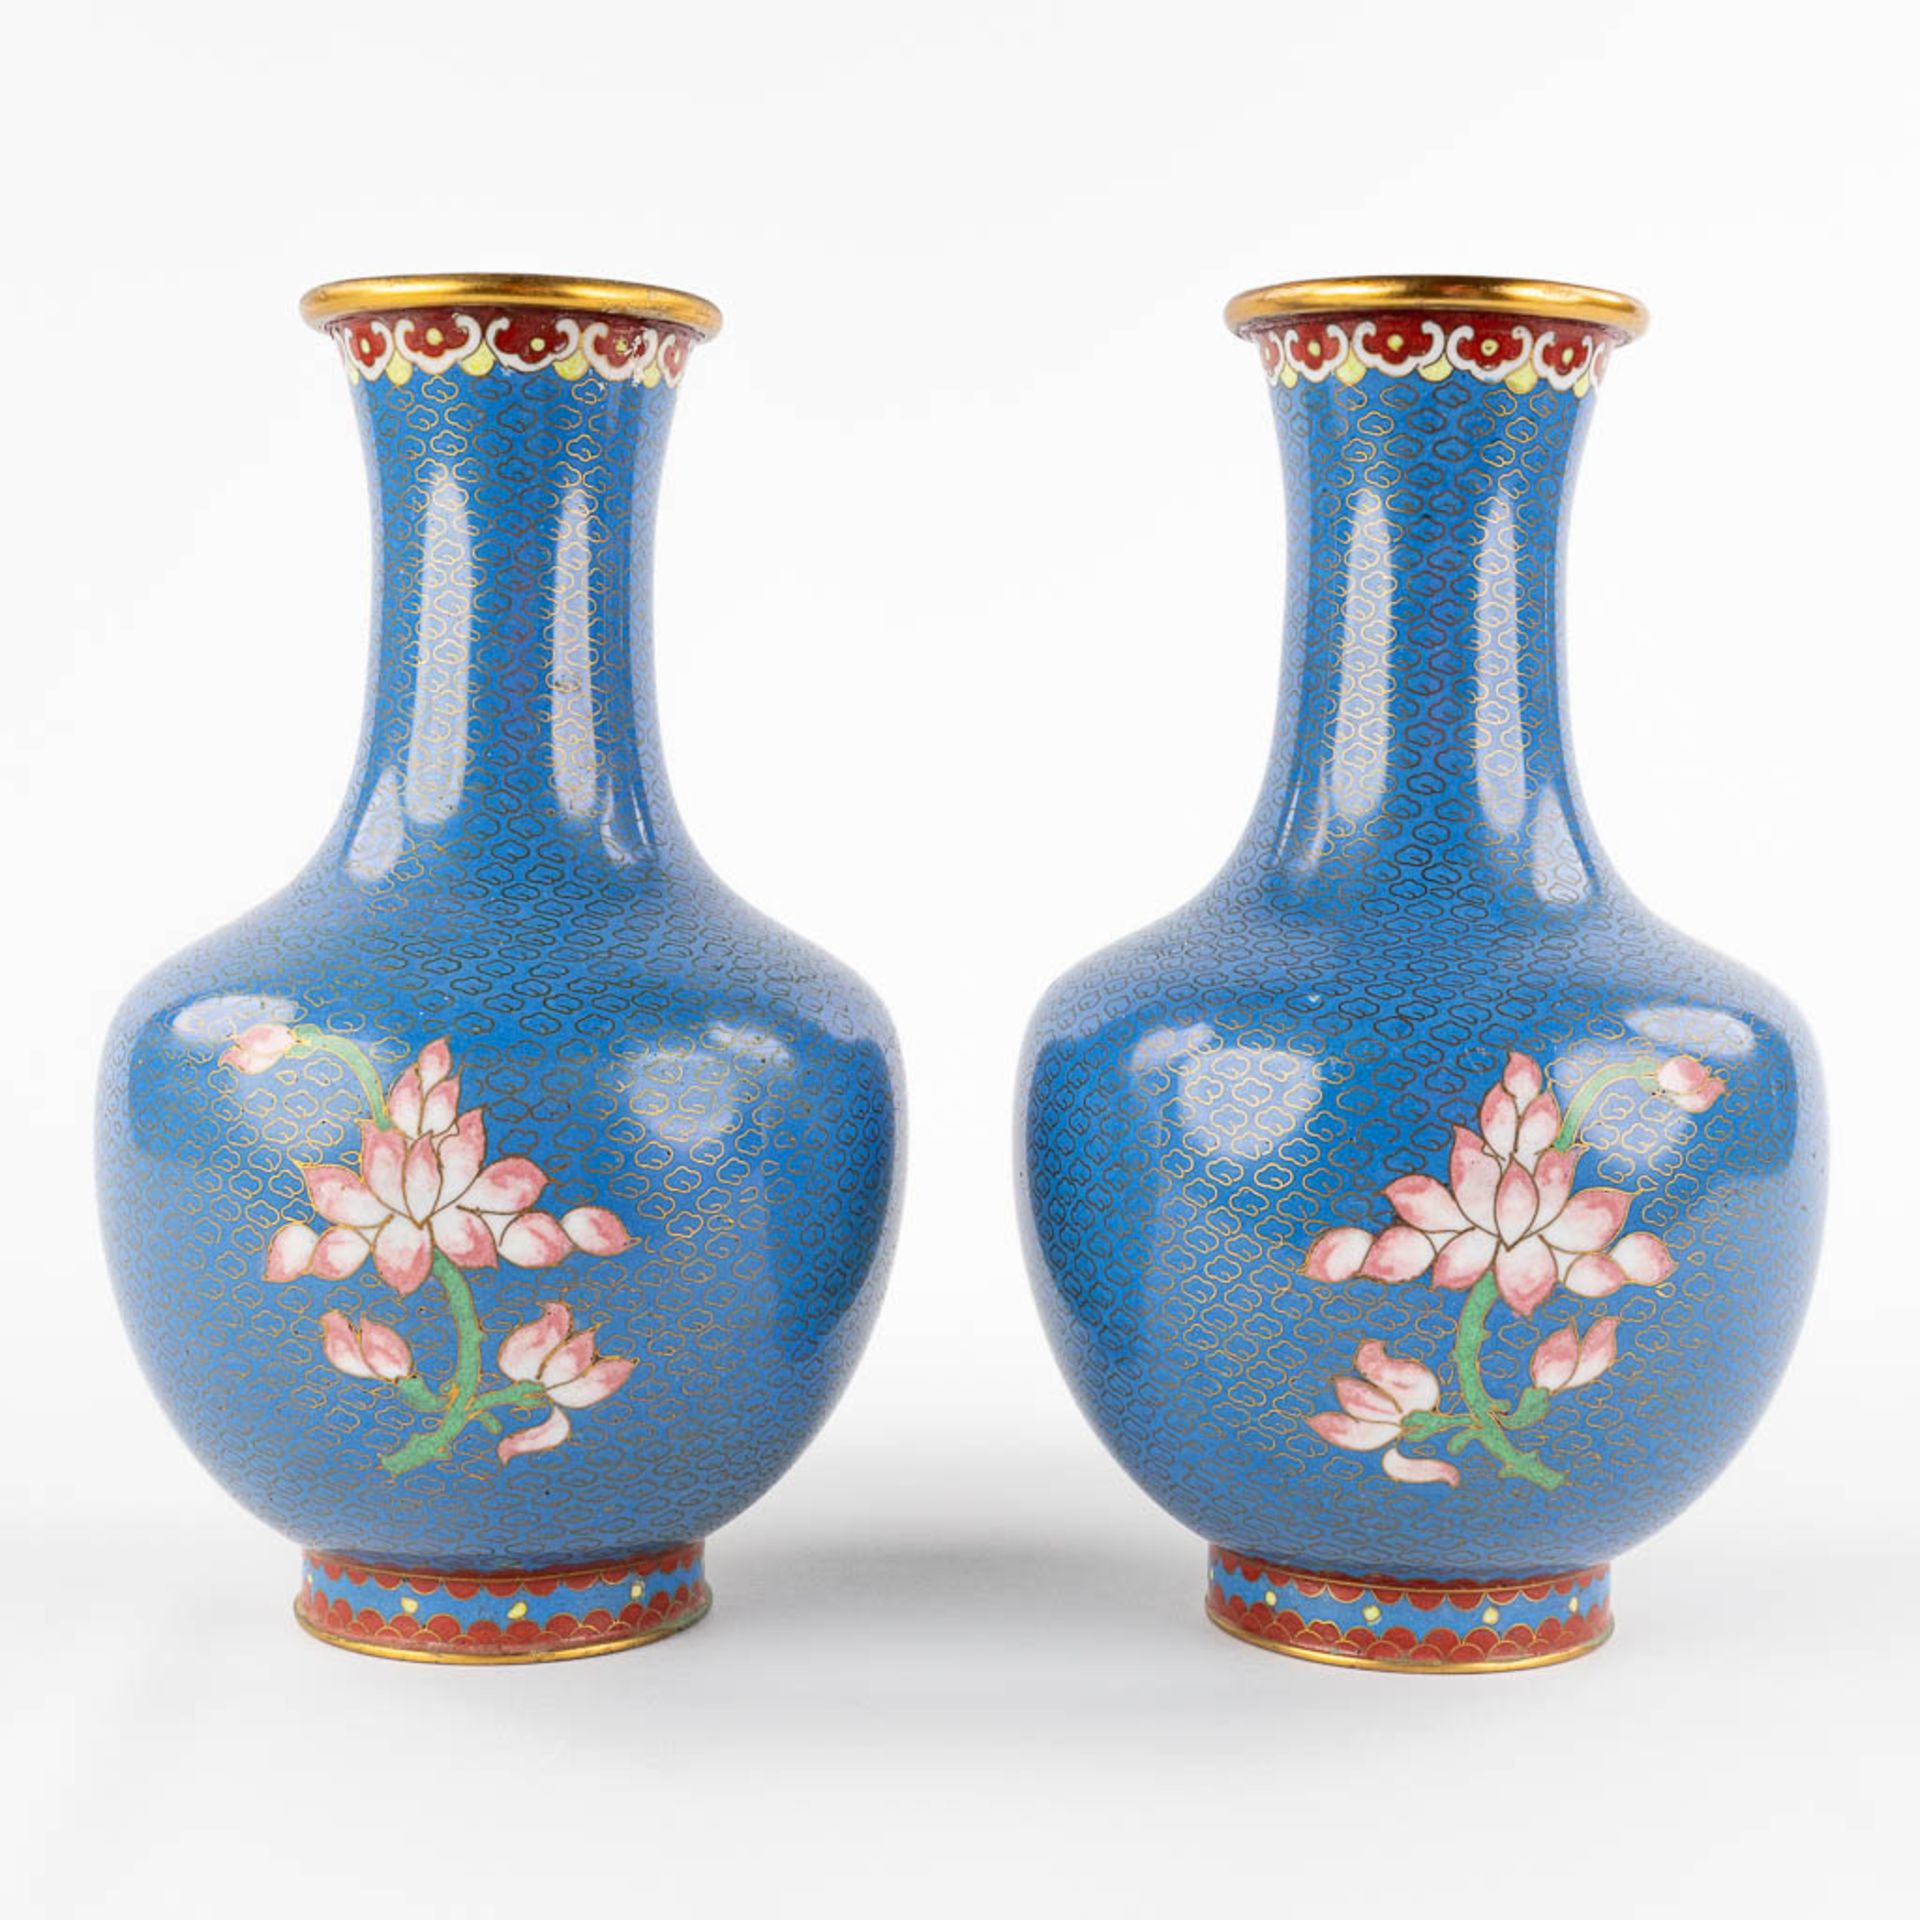 Five Oriental vases, cloisonné bronze. 20th C. (H:25 cm) - Image 5 of 27